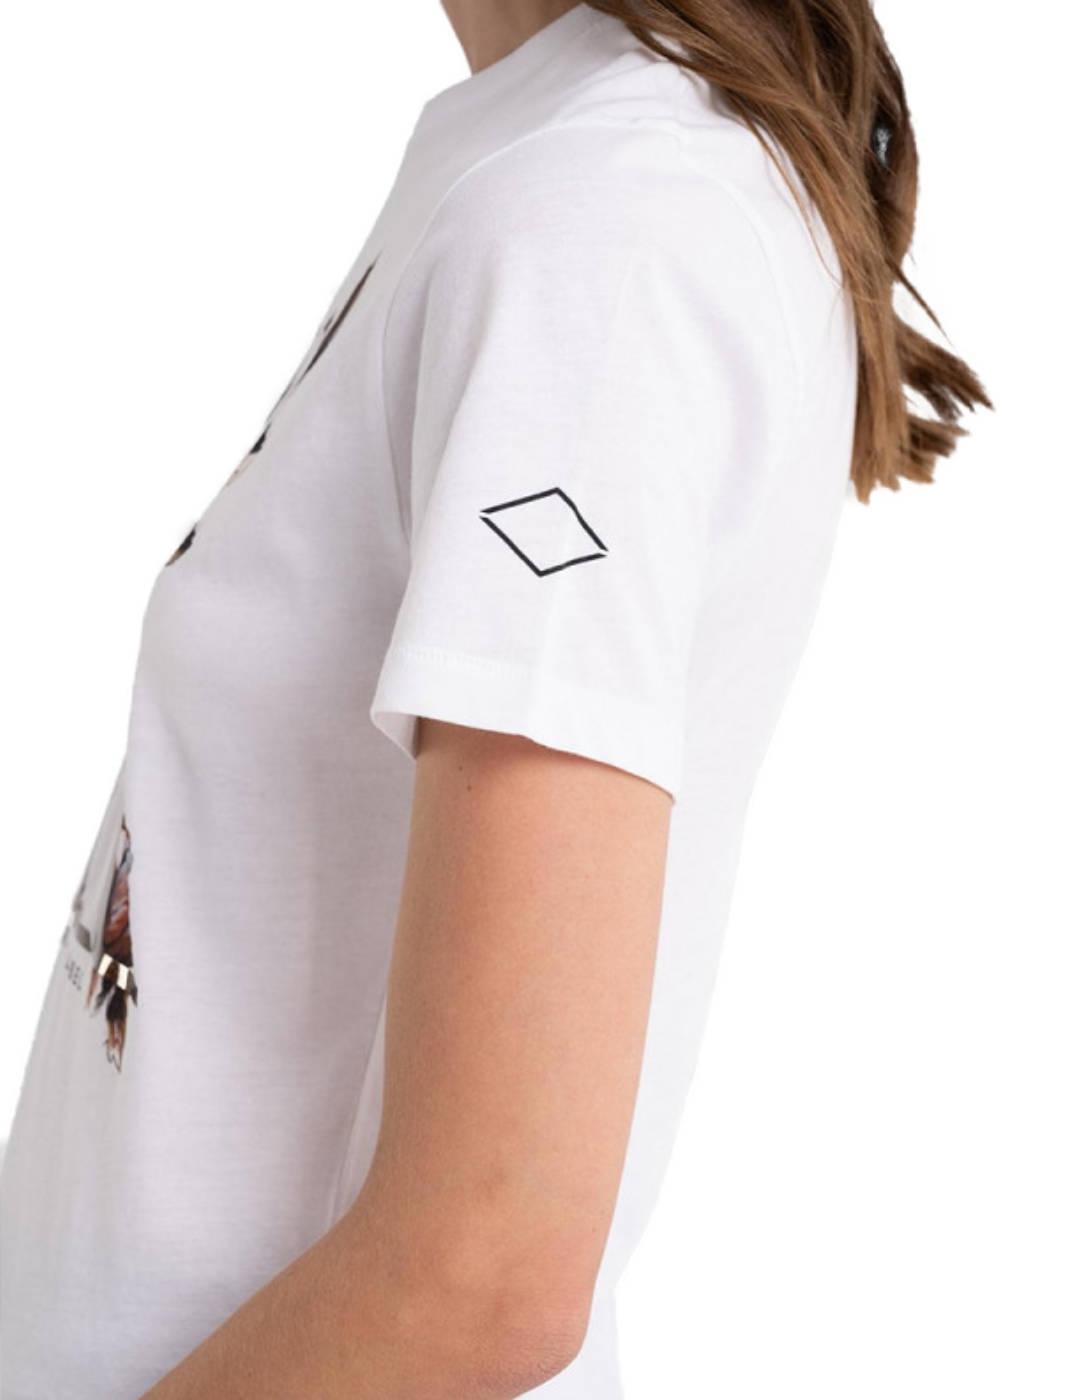 Camiseta Replay blanca R para mujer -b